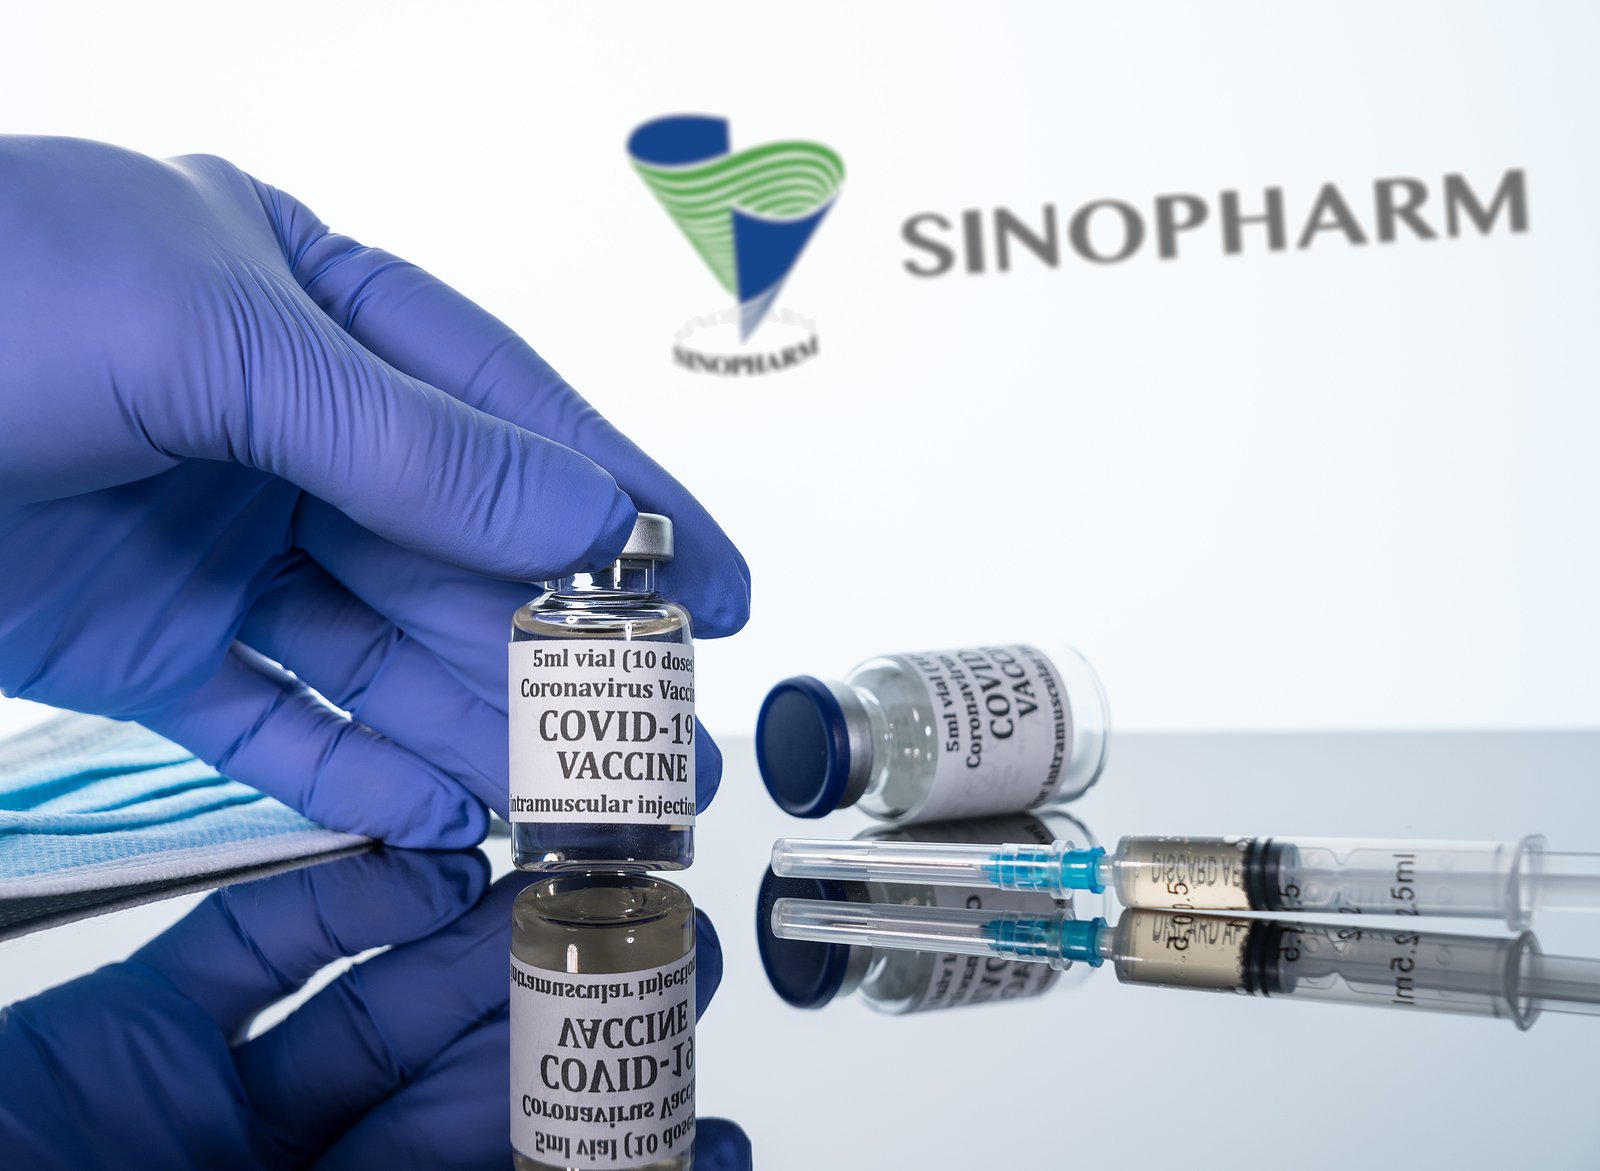  OMS a emis o autorizare de urgenţă pentru vaccinul anti-Covid chinezesc Sinopharm